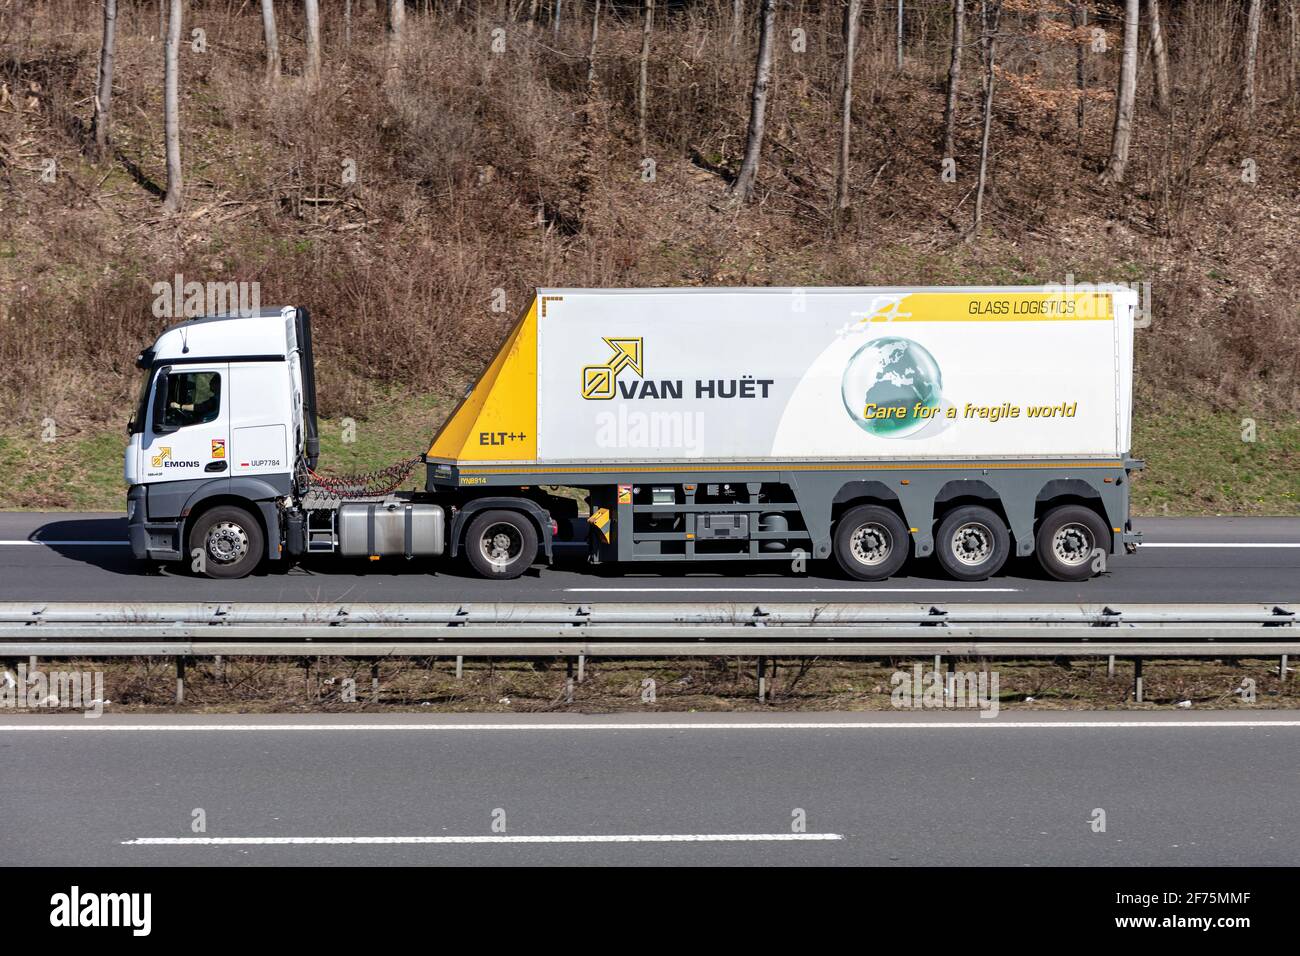 Emons Mercedes-Benz truck with Van Huet glass inloader trailer on motorway. Stock Photo